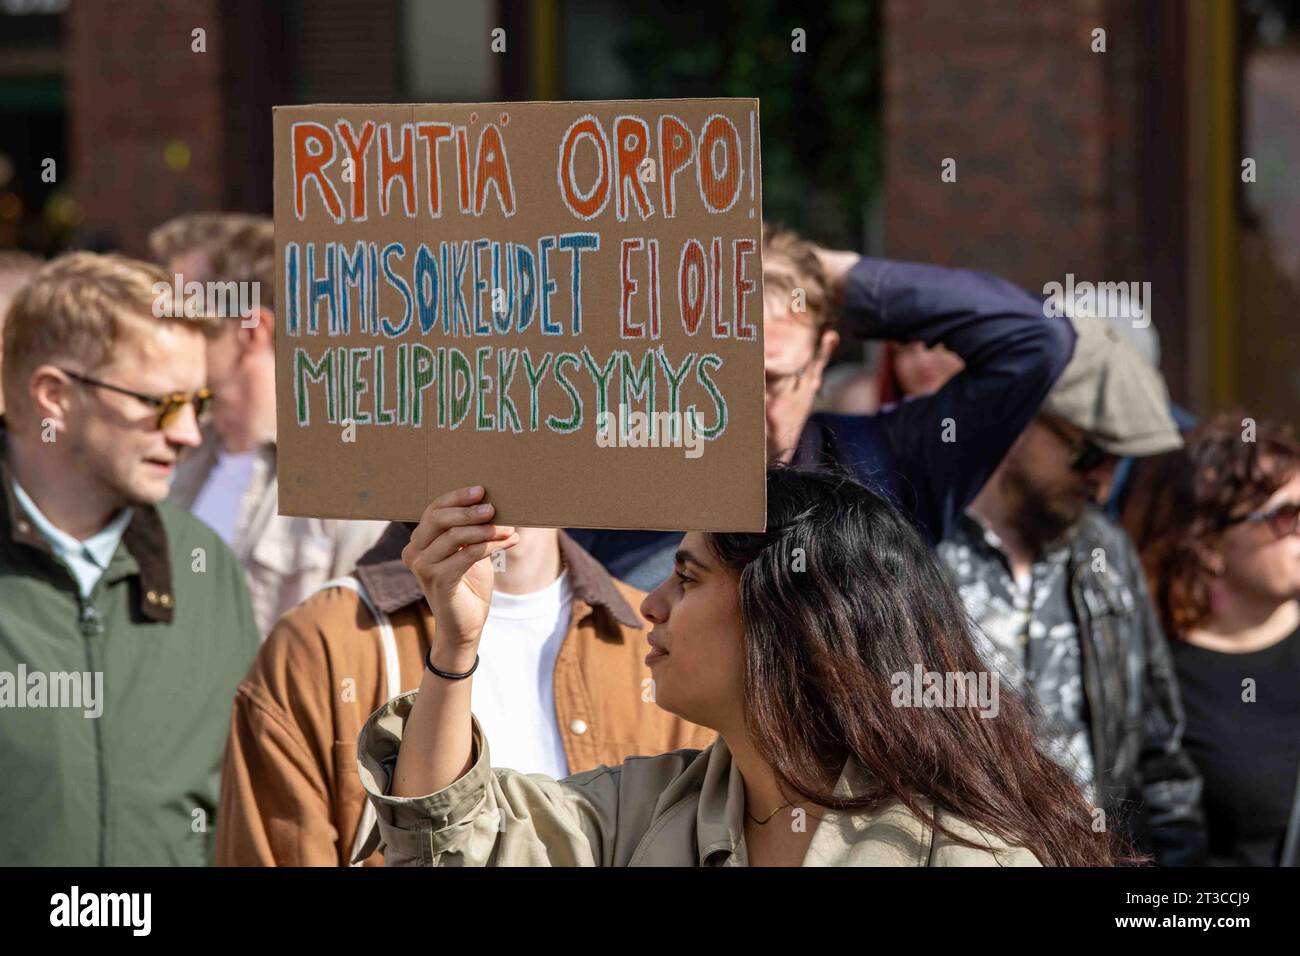 Ryhtiä Orpo! Demonstrant mit einem Pappschild auf mich emme Vaikene! Anti-Rassismus-Demonstration in Helsinki, Finnland. Stockfoto